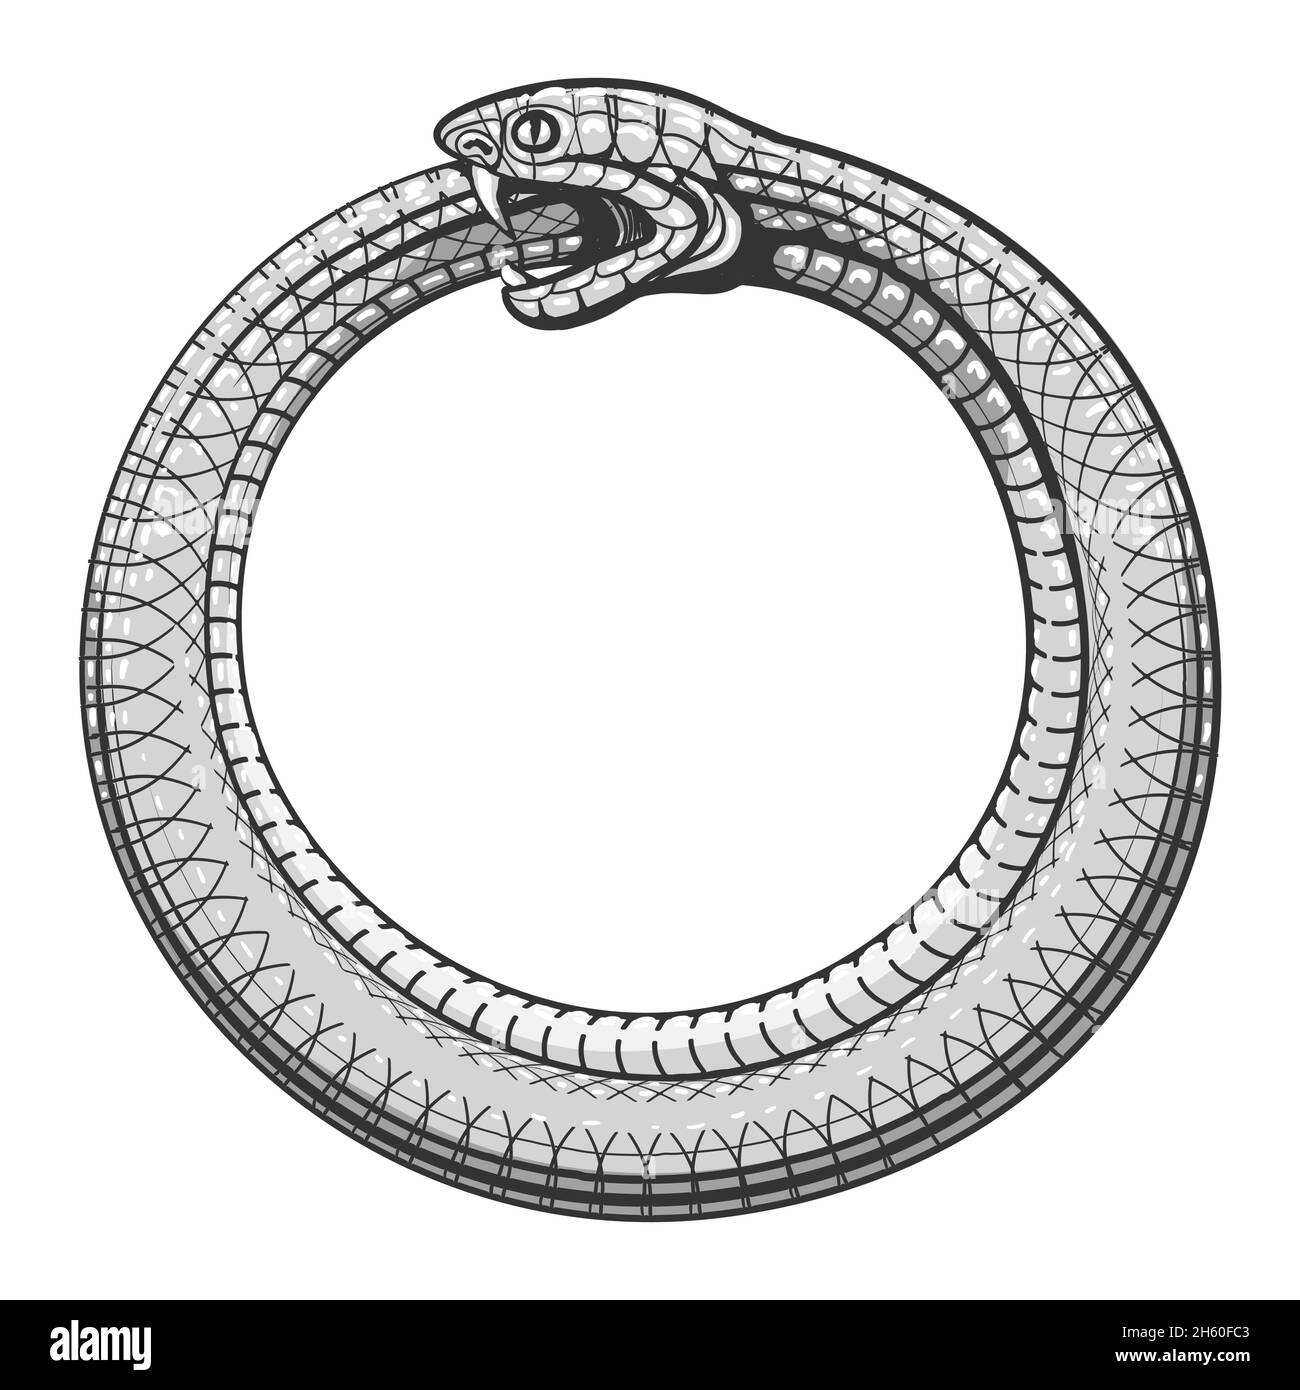 Simbolo magico di Ouroboros. Tatuaggio con serpente che cuocia la propria coda. Illustrazione vettoriale Illustrazione Vettoriale